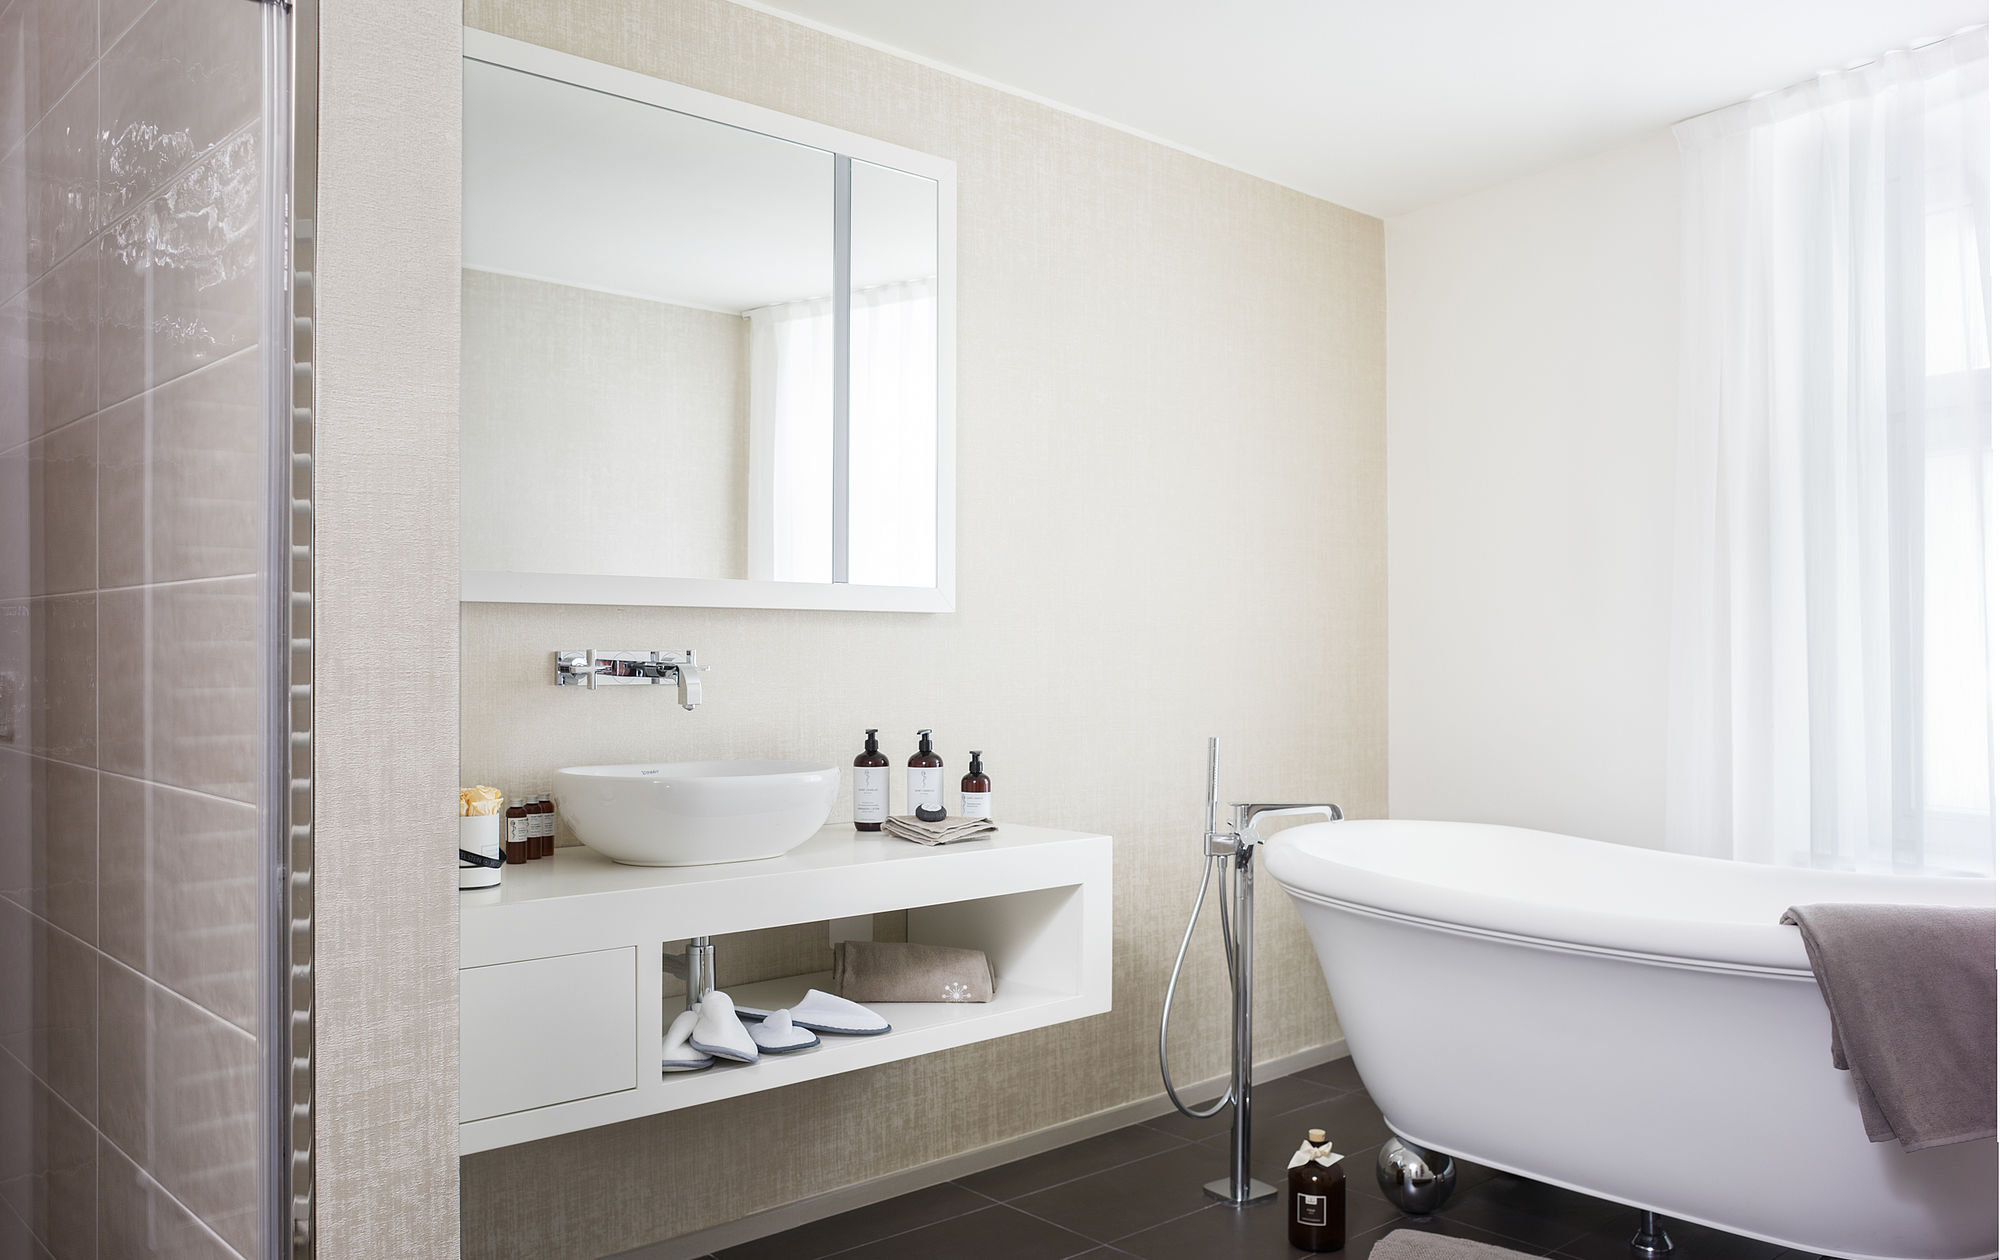 Blick auf Badewanne und Waschbecken einer Hotel Suite mit bereitstehenden Handtüchern, Pflegeprodukten und Hausschuhen